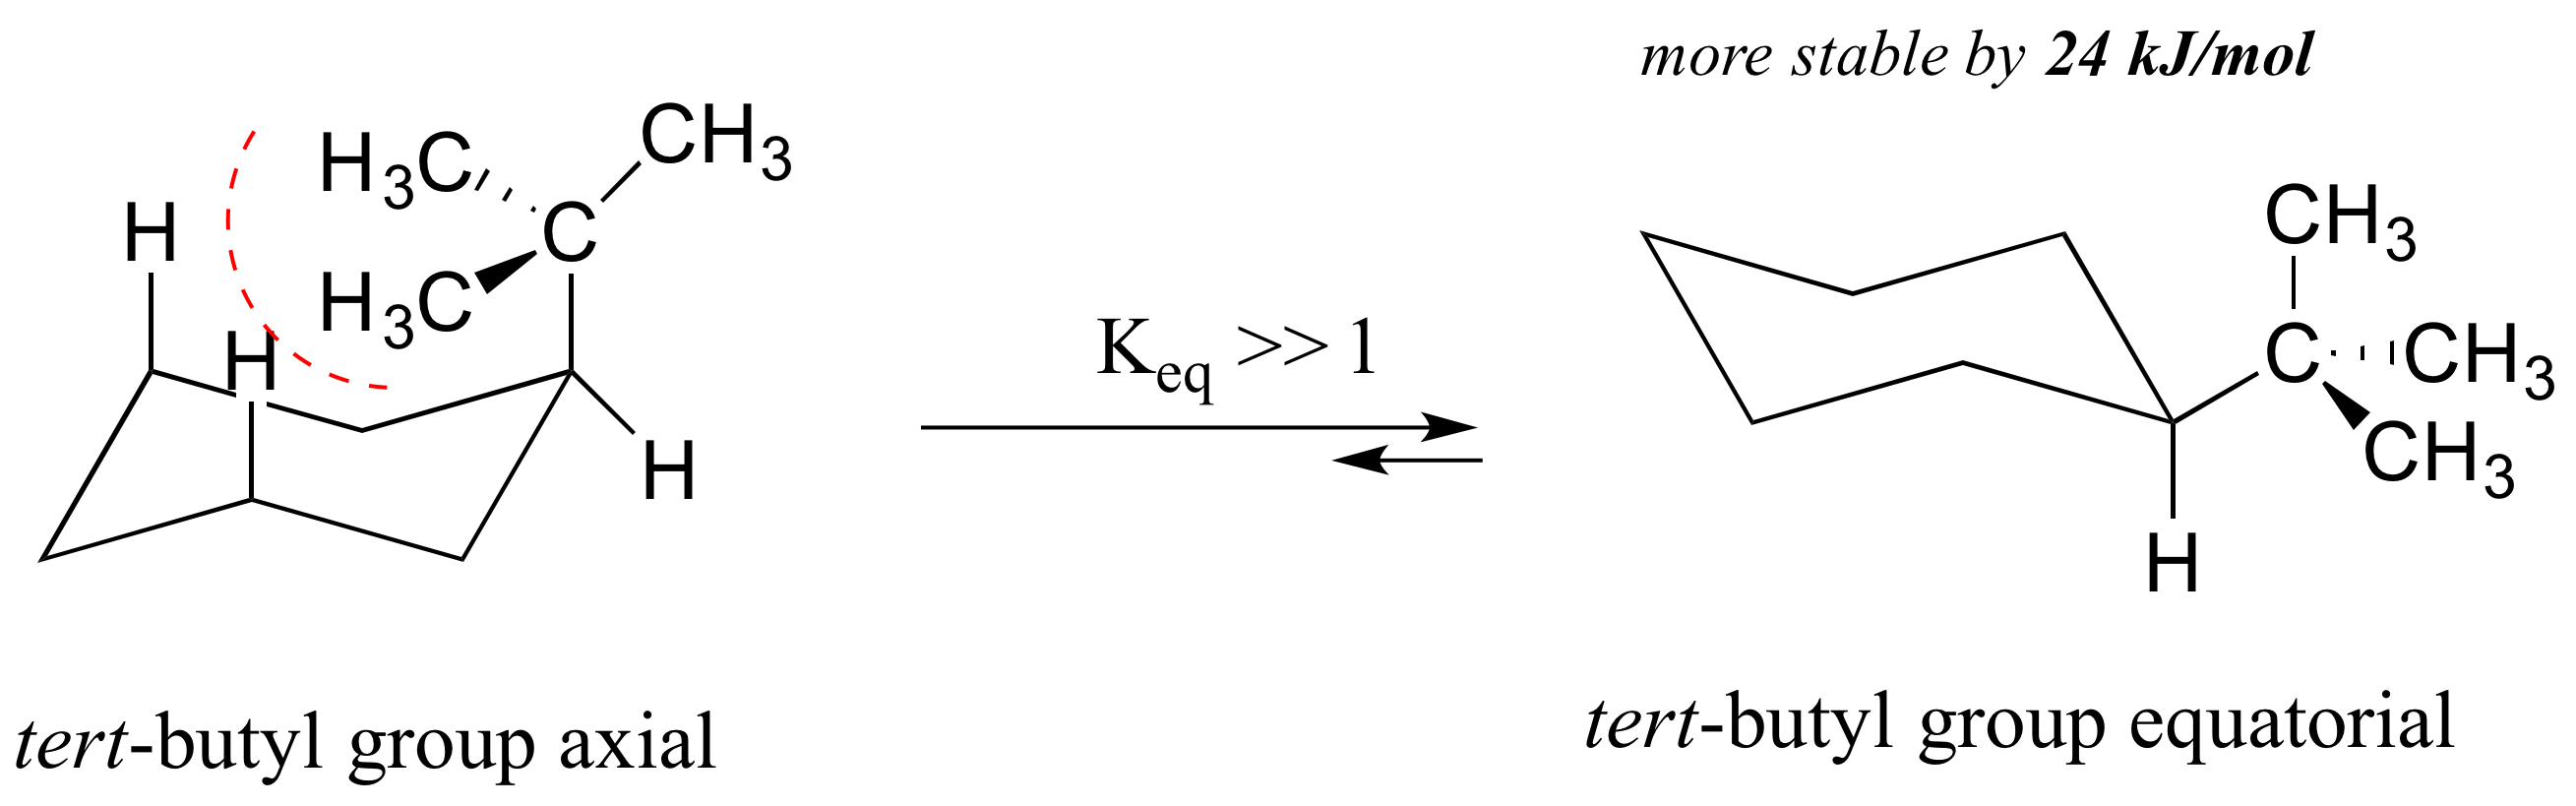 Izquierda: Ciclohexano con grupo terc-butilo axial. Derecha: ciclohexano con grupo terc-butilo ecuatorial. Más estable en 24 kilojulios por mol. Constante de equilibrio mucho mayor a uno.